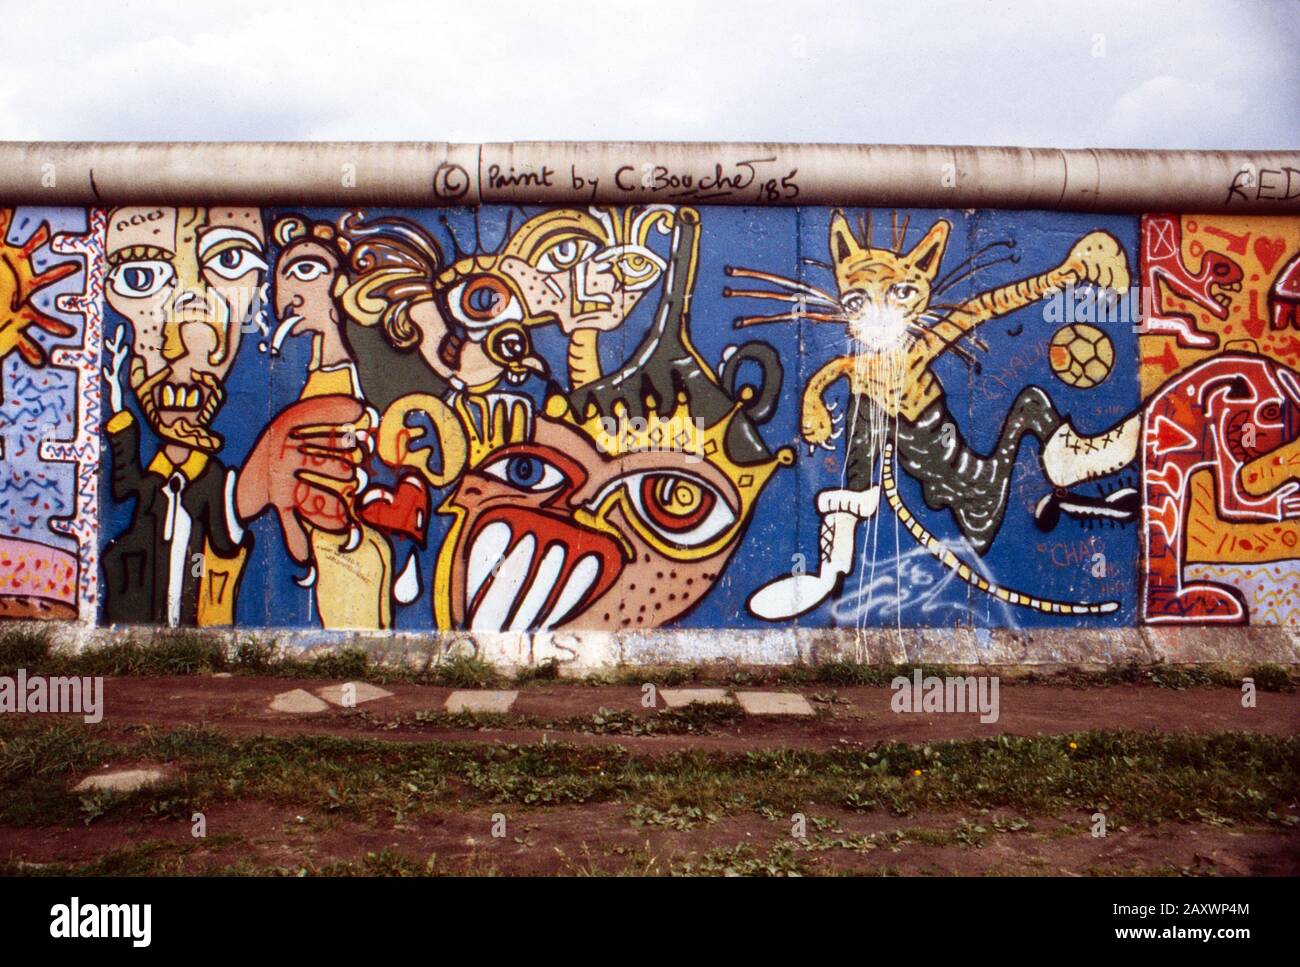 Gesamtkunst auf einem Stück der Mauer in Berlin-Kreuzberg, Deutschland 1986. Sprühte Kunst an der Berliner Mauer in Kreuzberg, Deutschland 1986. Stockfoto